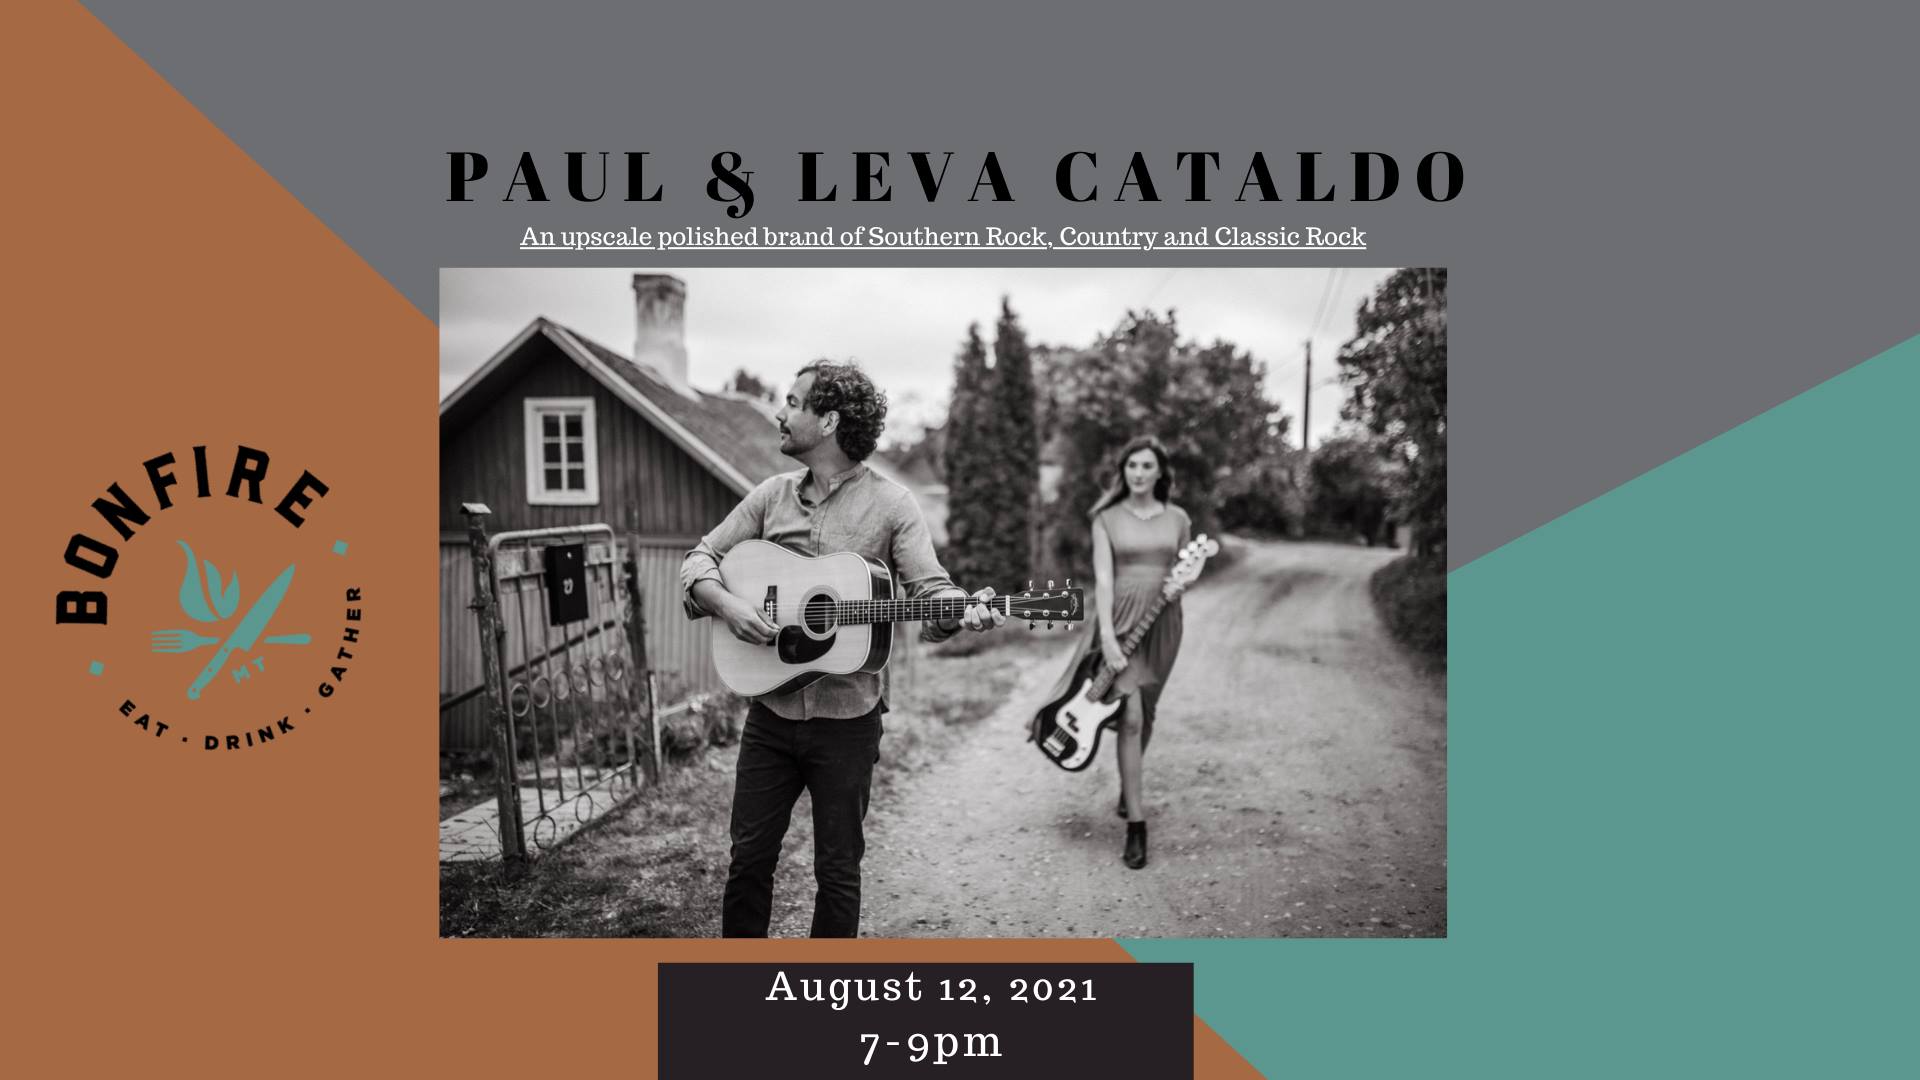 Paul & Leva Cataldo